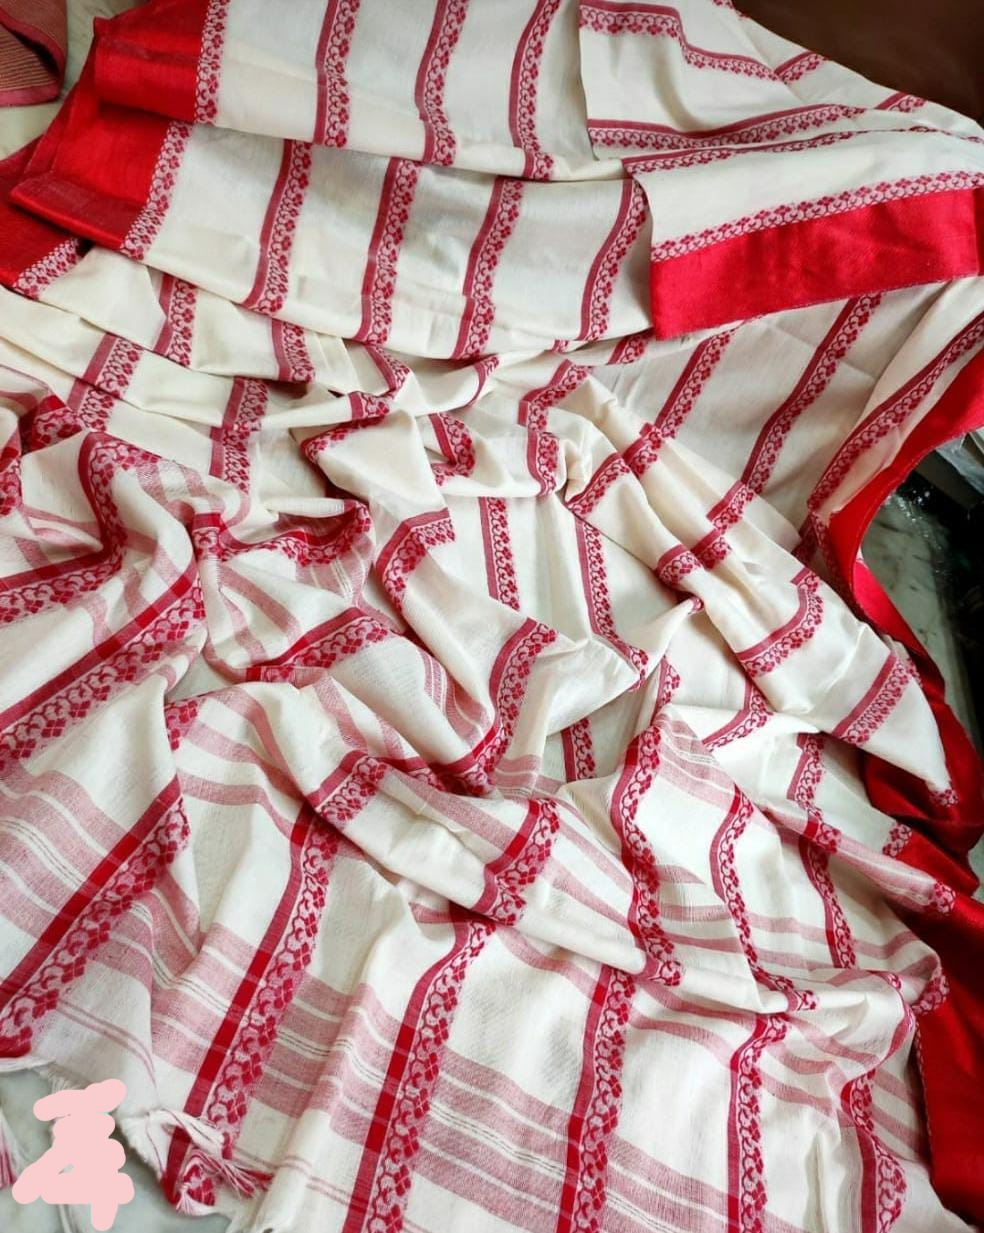 Agamoni Durga Puja Collection Red & White Begampuri Saree